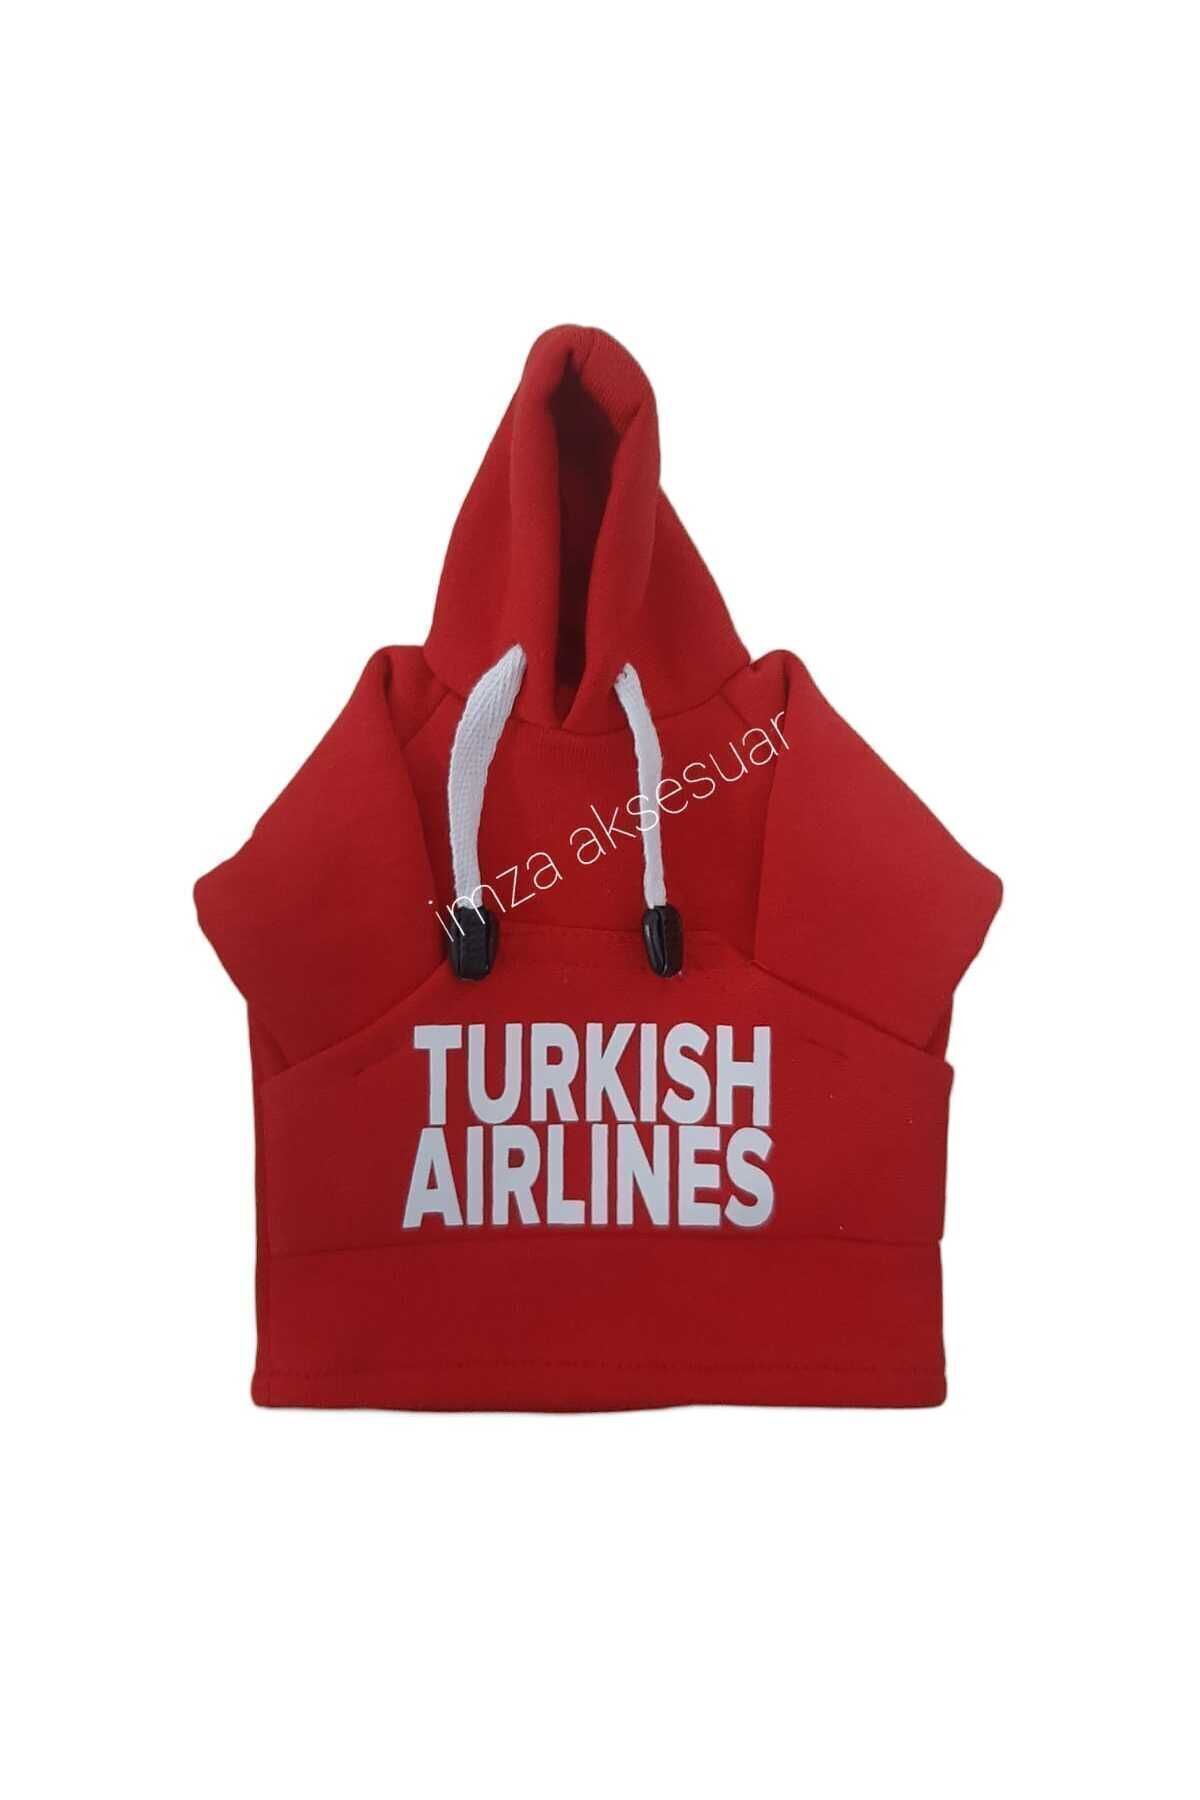 İmza Turkish airlines vites aksesuarı kırmızı kapşonlu vites poları, vites hoodie